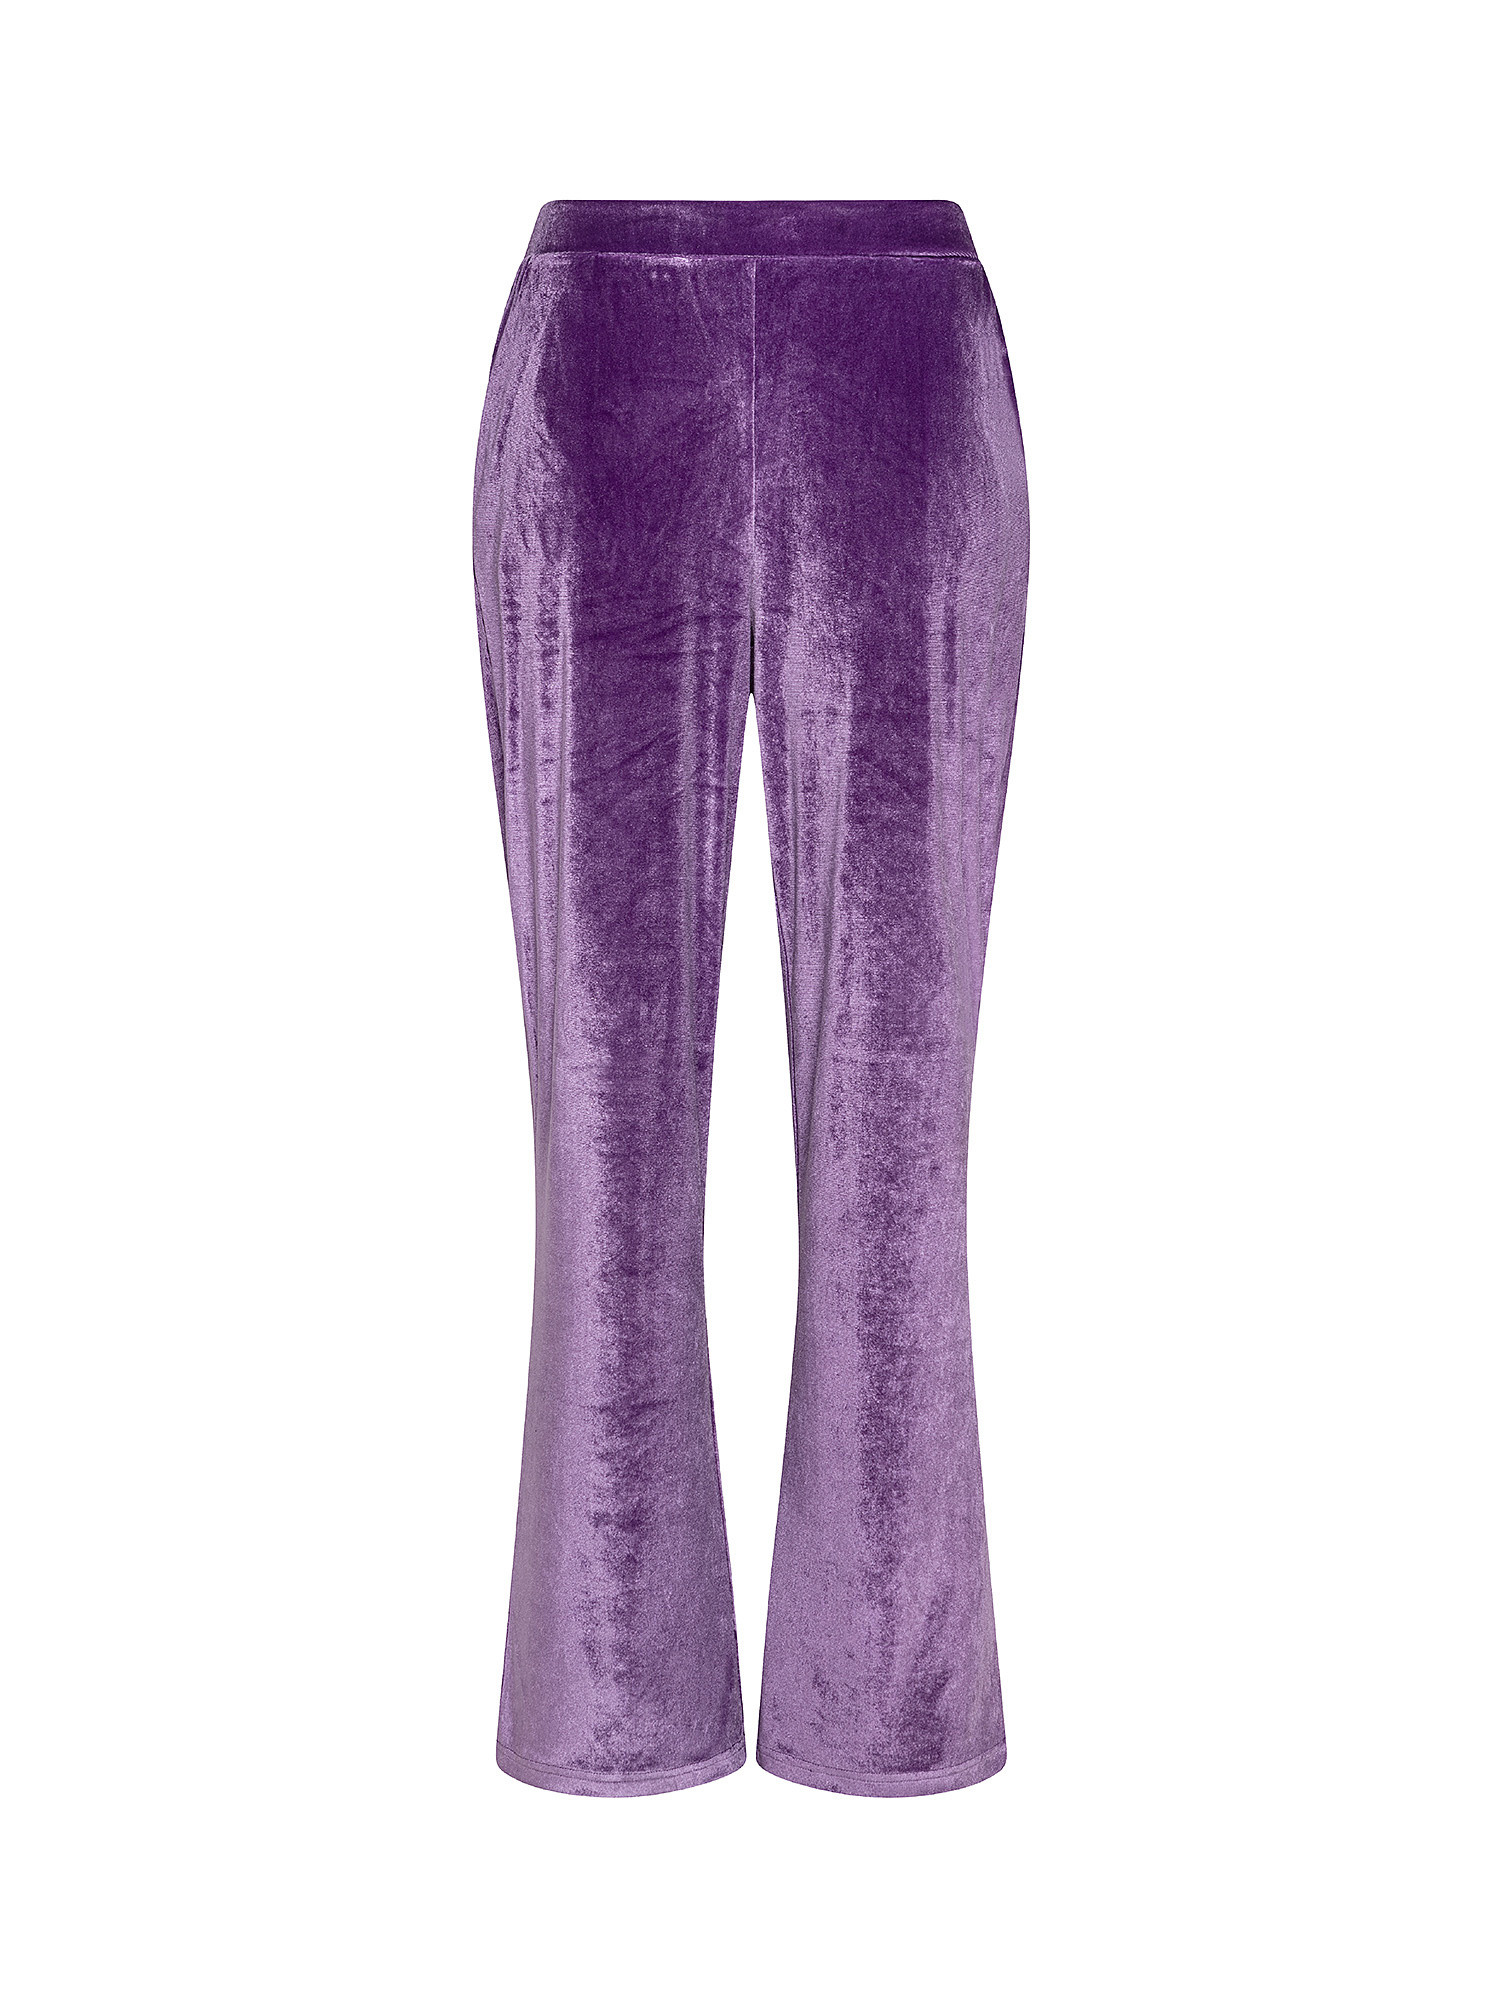 Велюровые брюки Koan Knitwear, фиолетовый